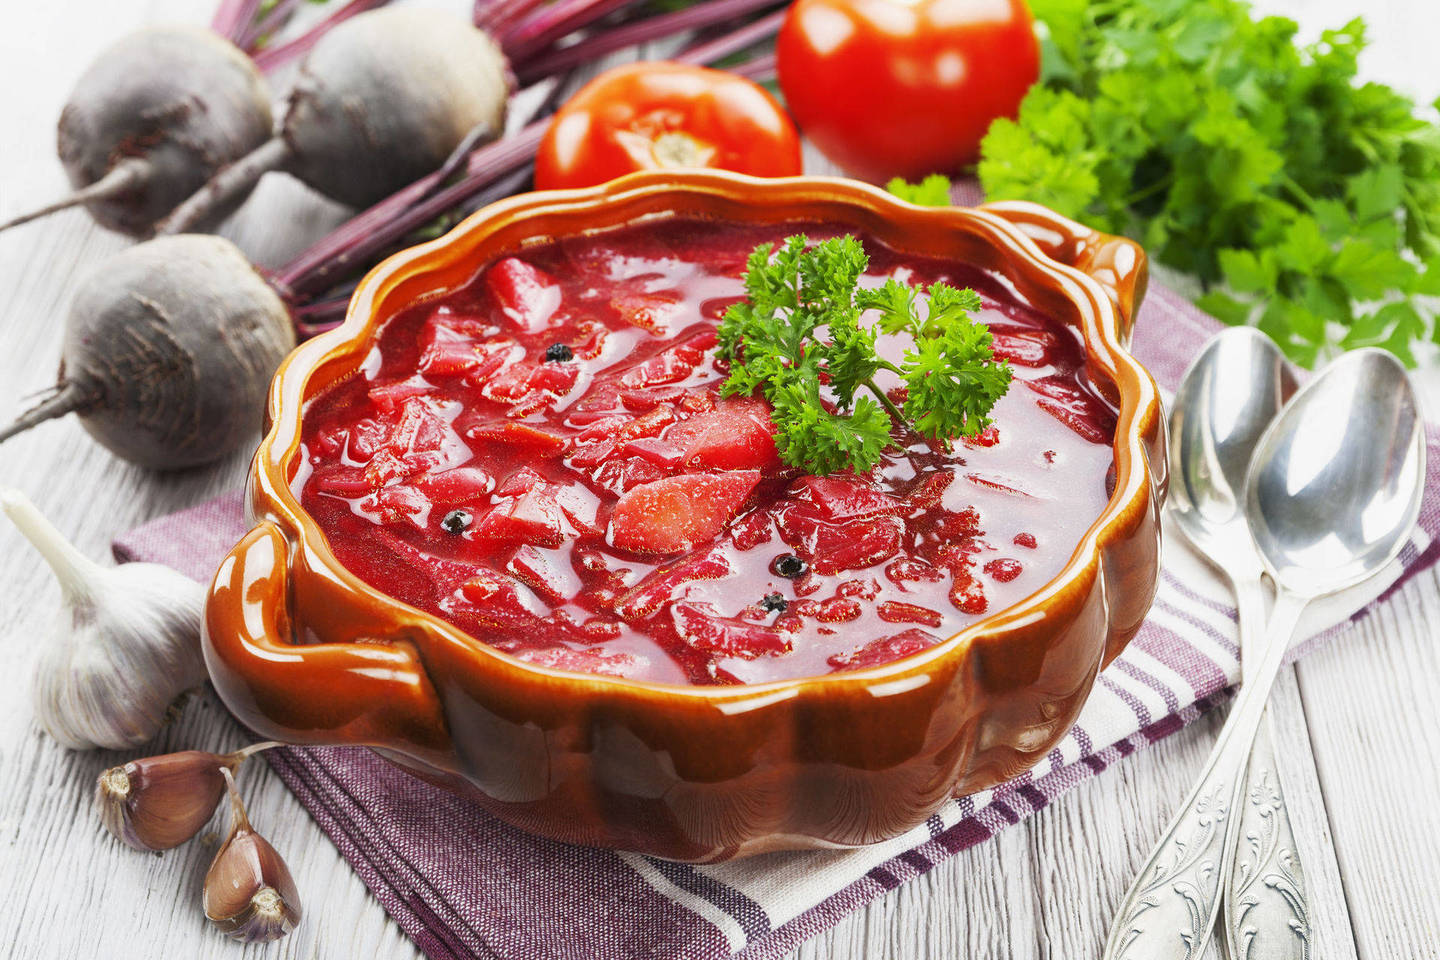 Prieš metus daržovės burokėlių sriubai Omsko turguje kainuodavo 165 rublius.<br>123rf nuotr.